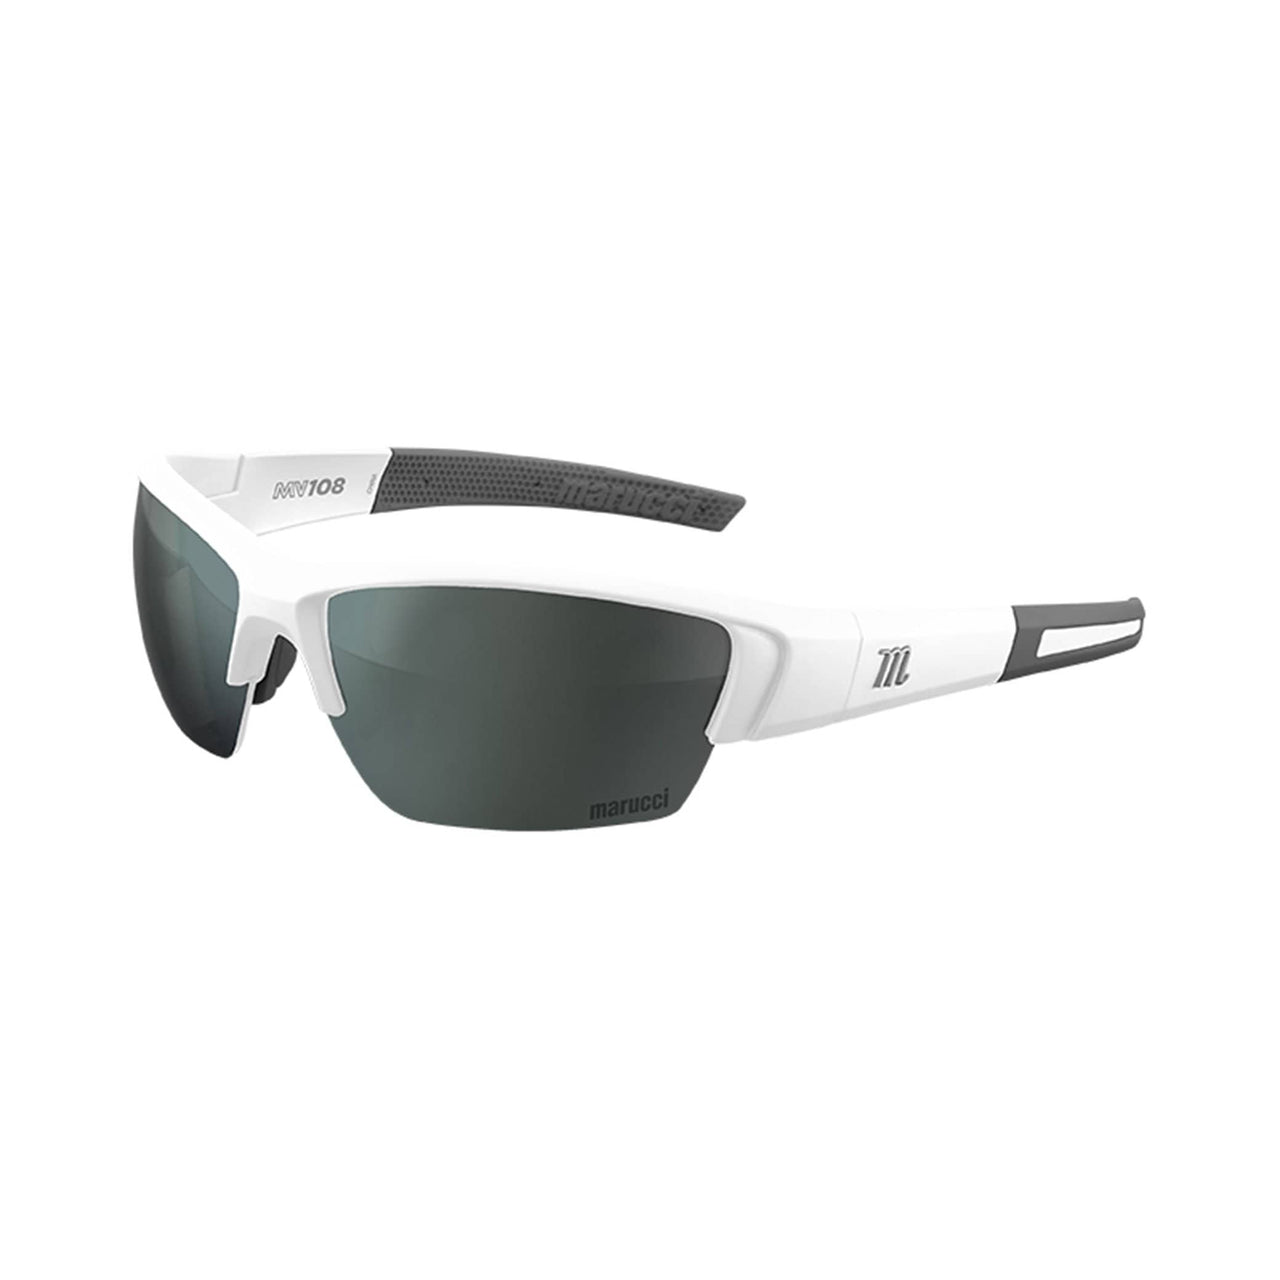 Marucci Sunglasses Matte White - Green Lens with Silver Mirror Marucci MV108 Performance Sunglasses